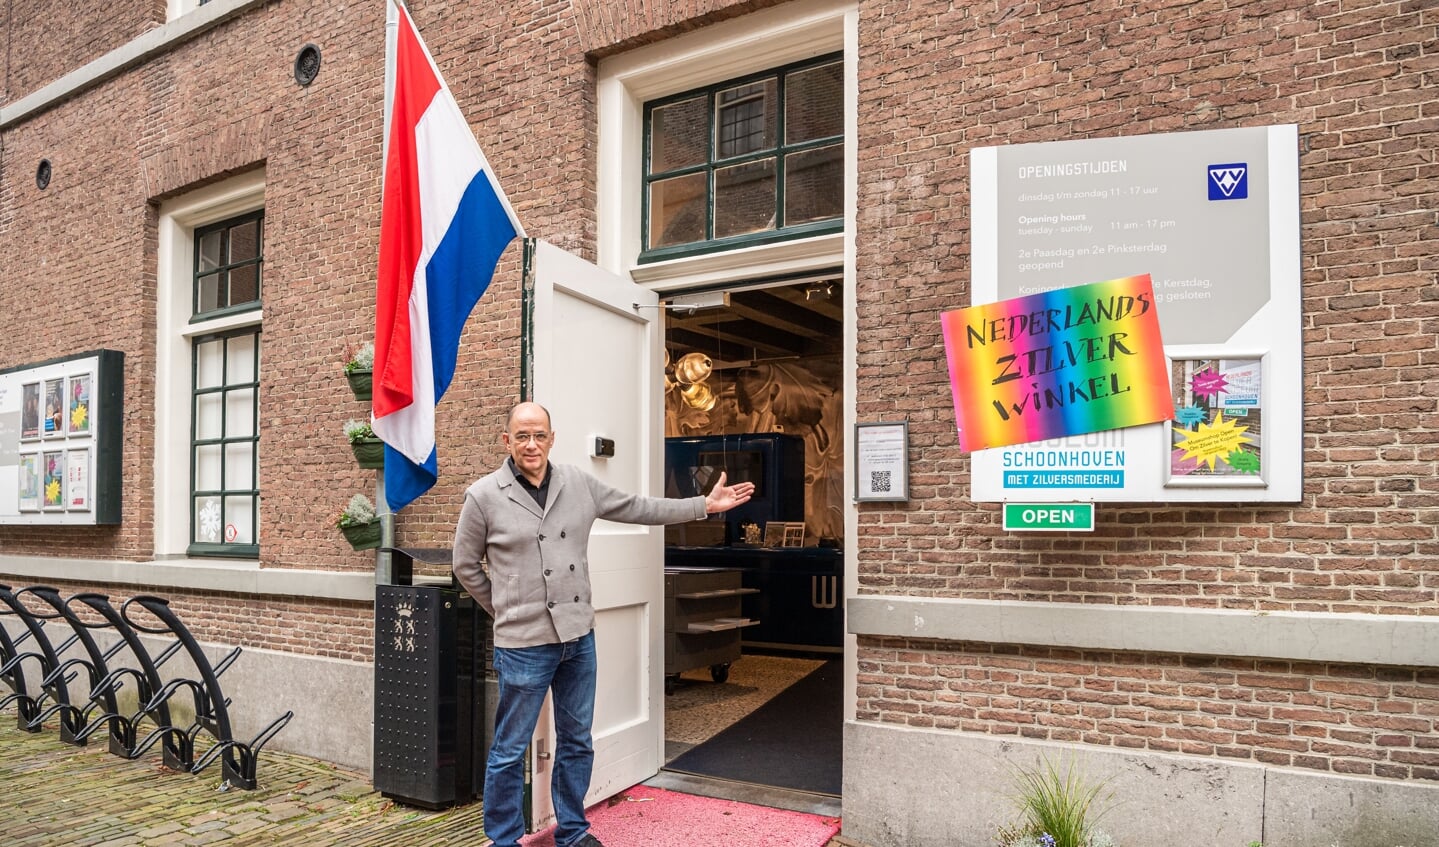 • Directeur Marcel Teheux van het Nederlands Zilvermuseum in Schoonhoven opende woensdag ondanks de lockdown de deuren van het museum.